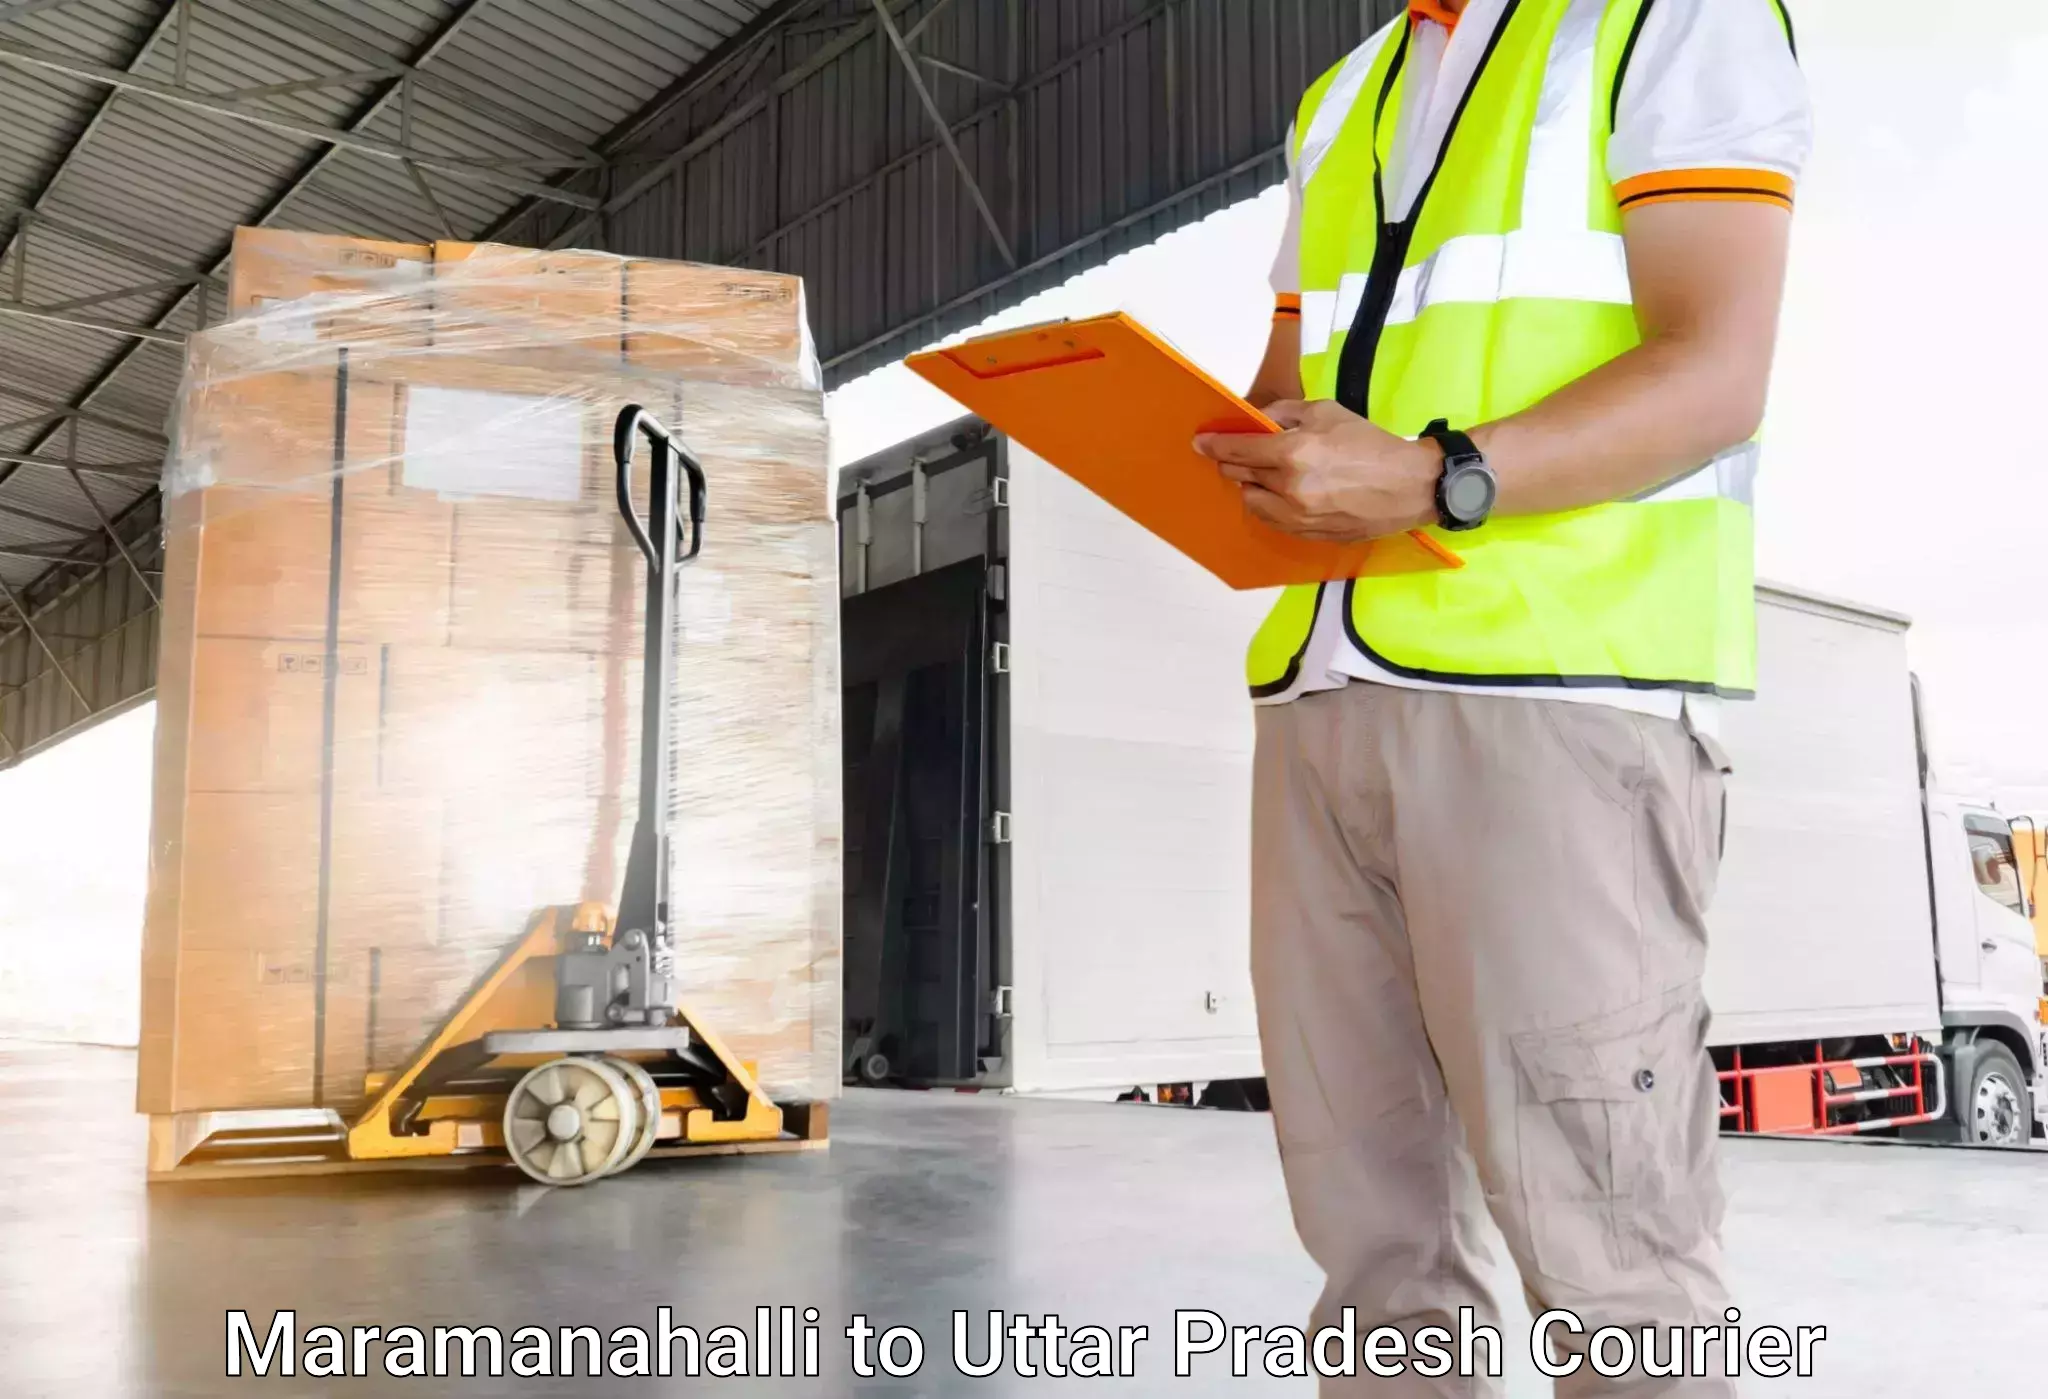 Luggage delivery network Maramanahalli to Raebareli